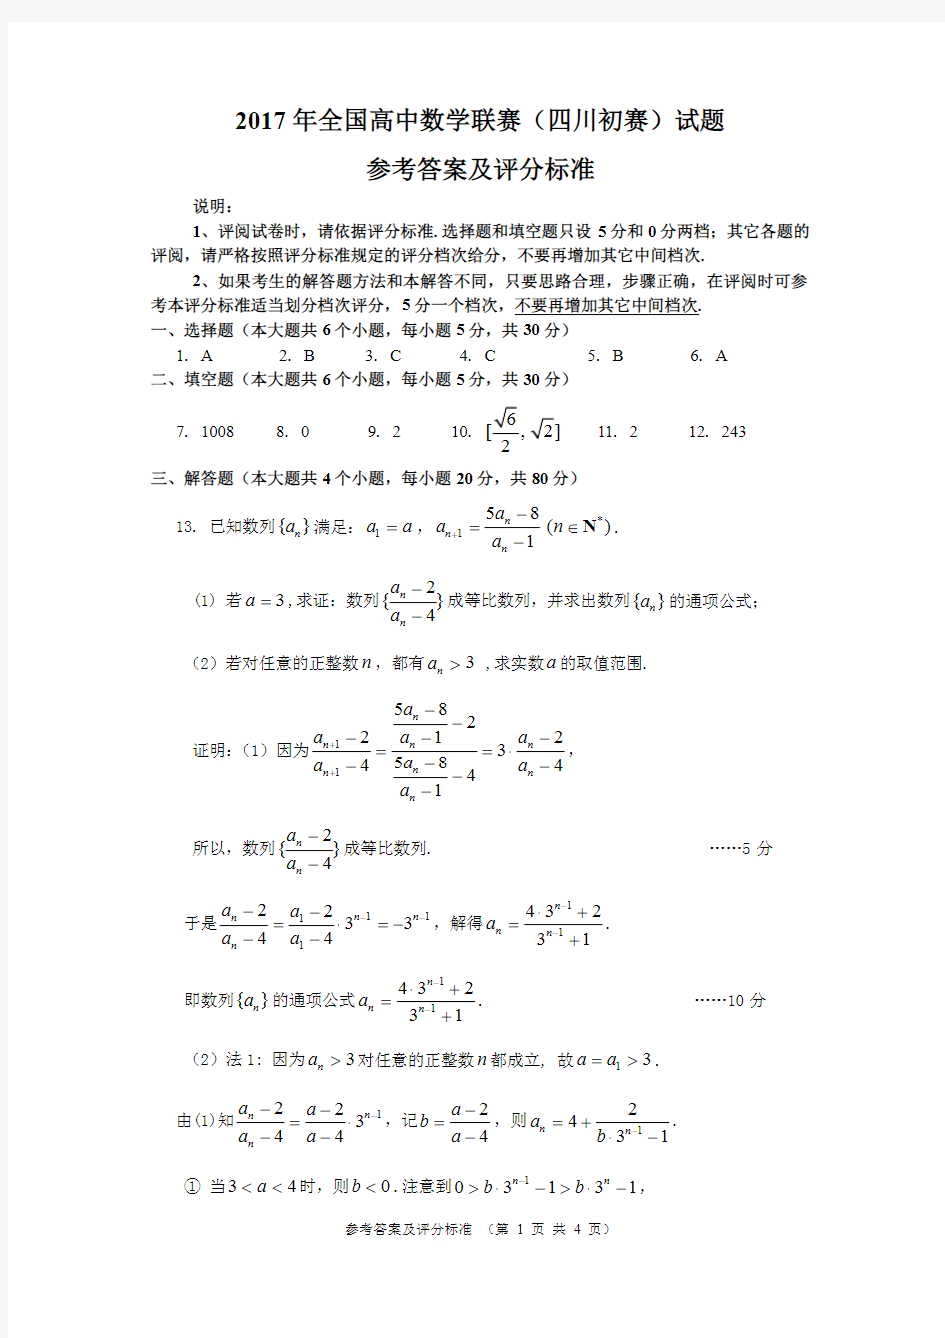 2017年高中数学联赛(四川初赛)参考答案及评分细则